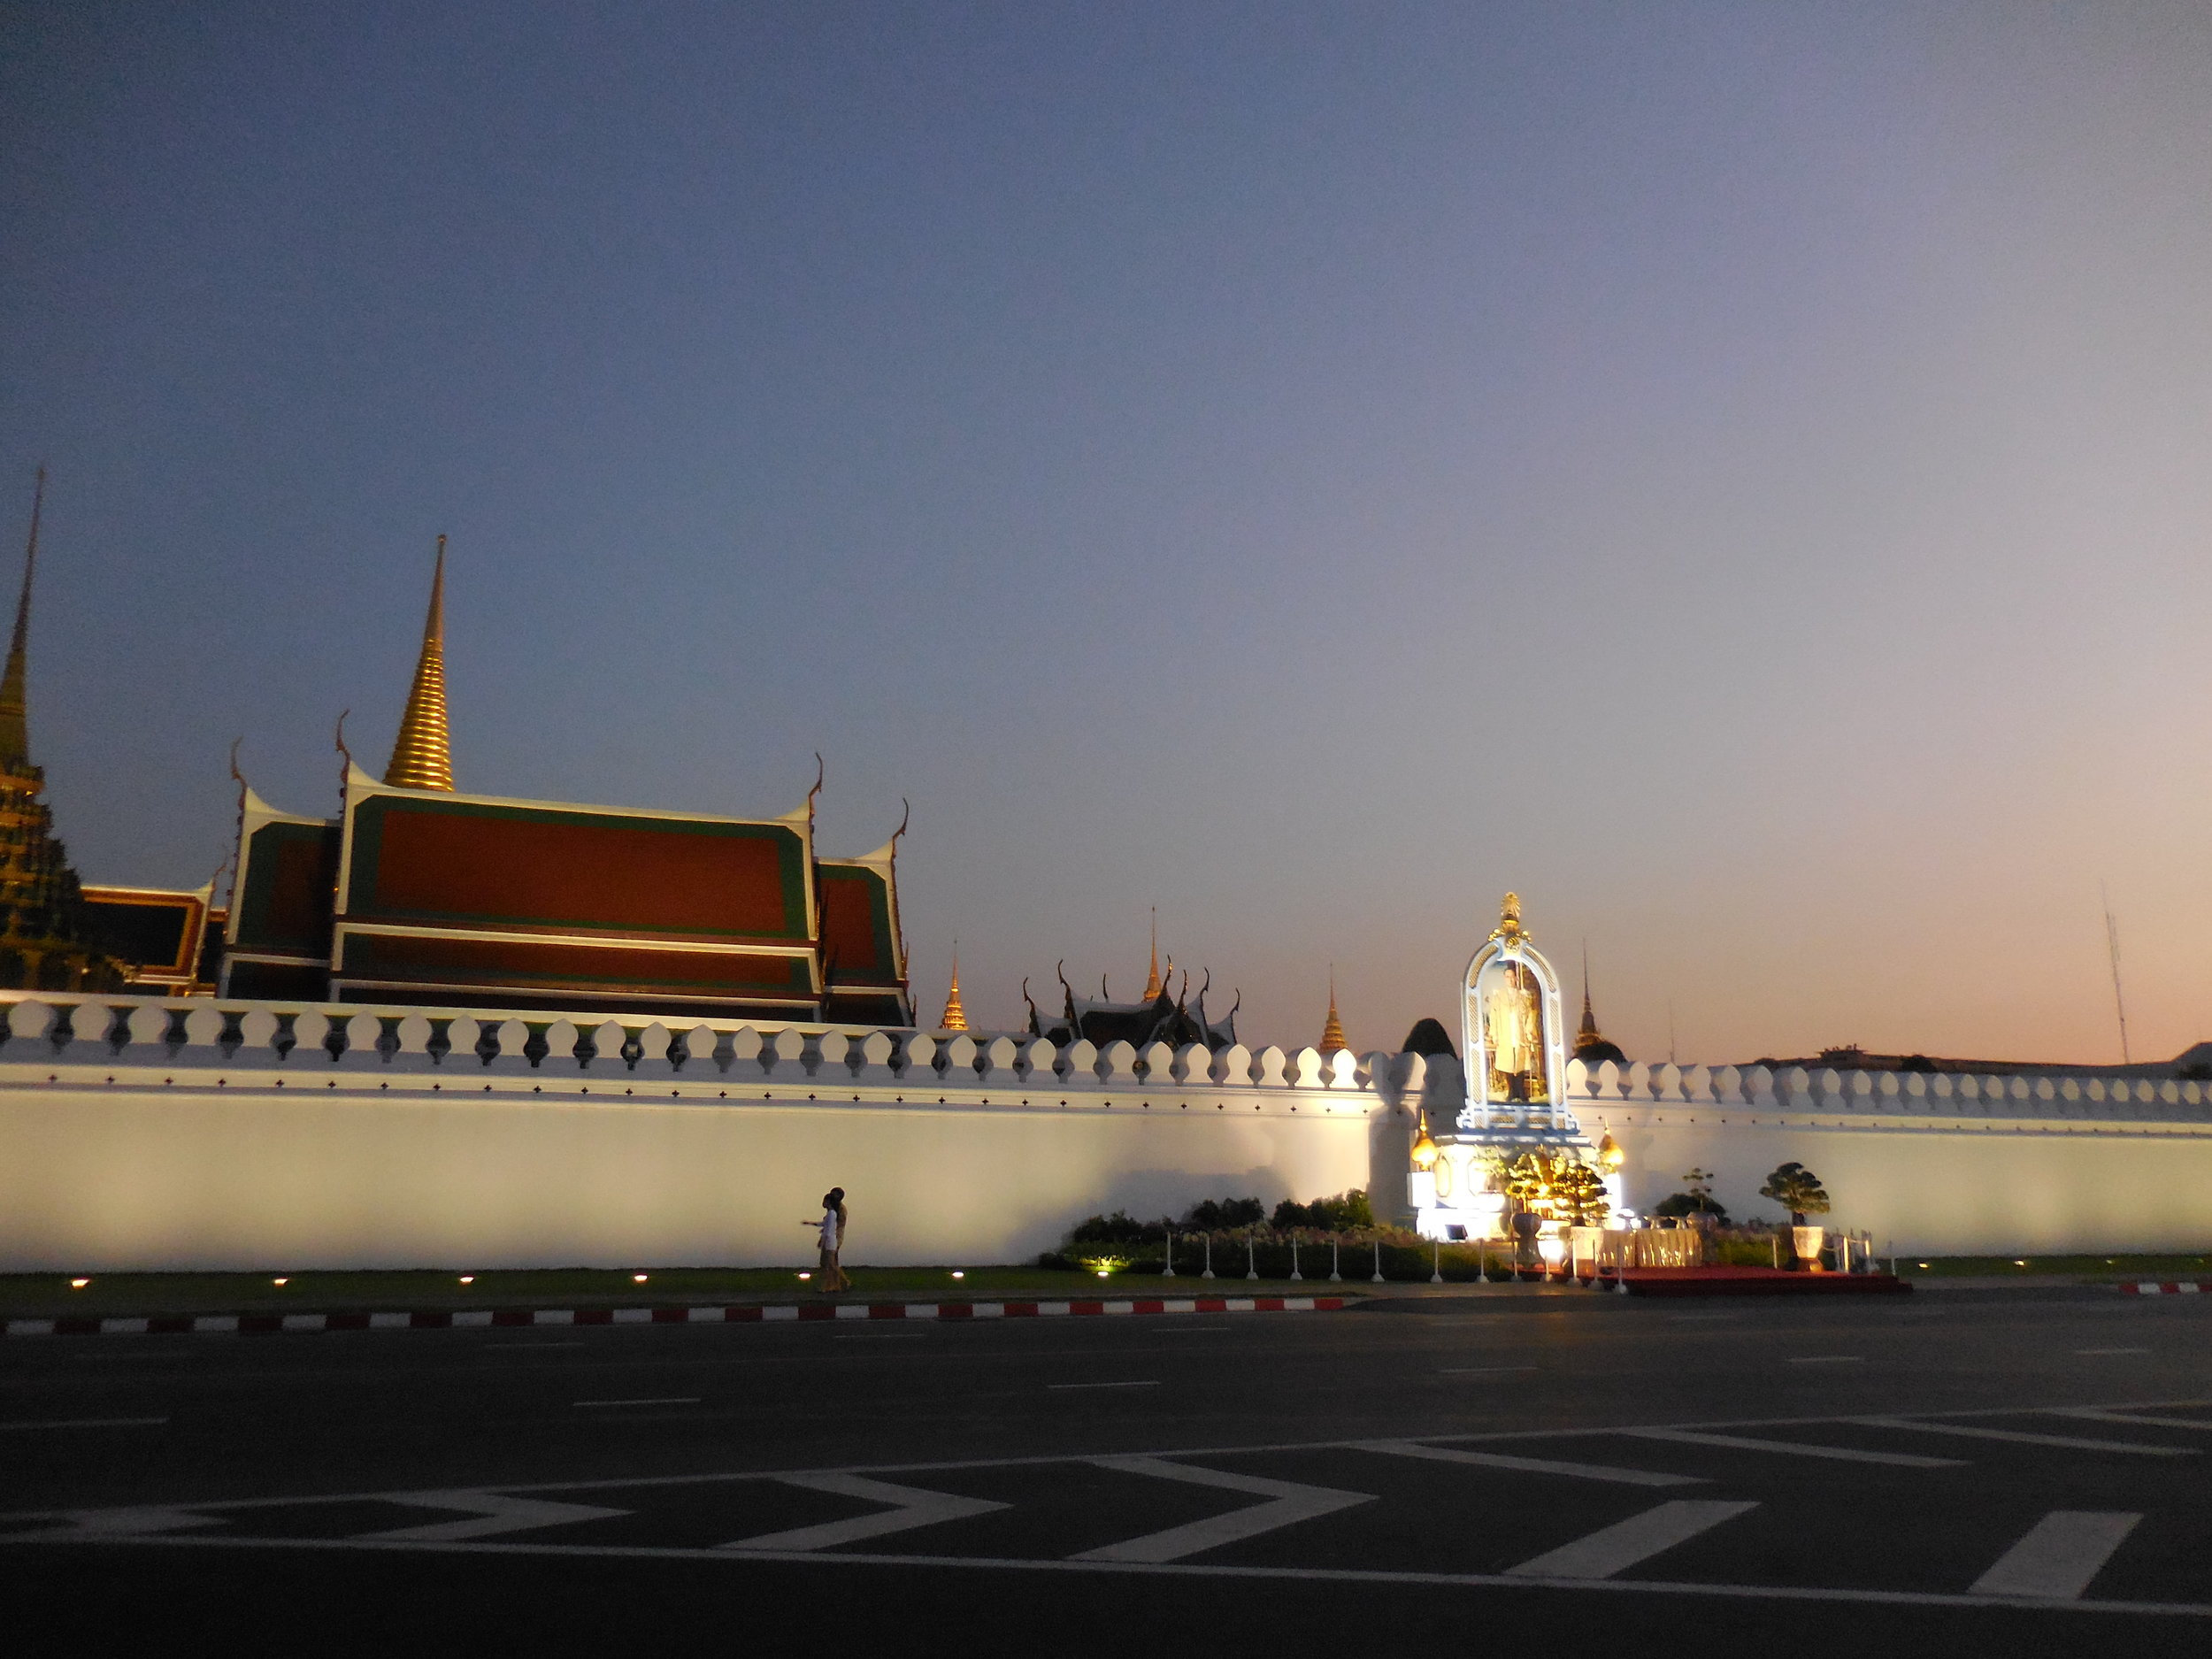 Bangkok - Palace